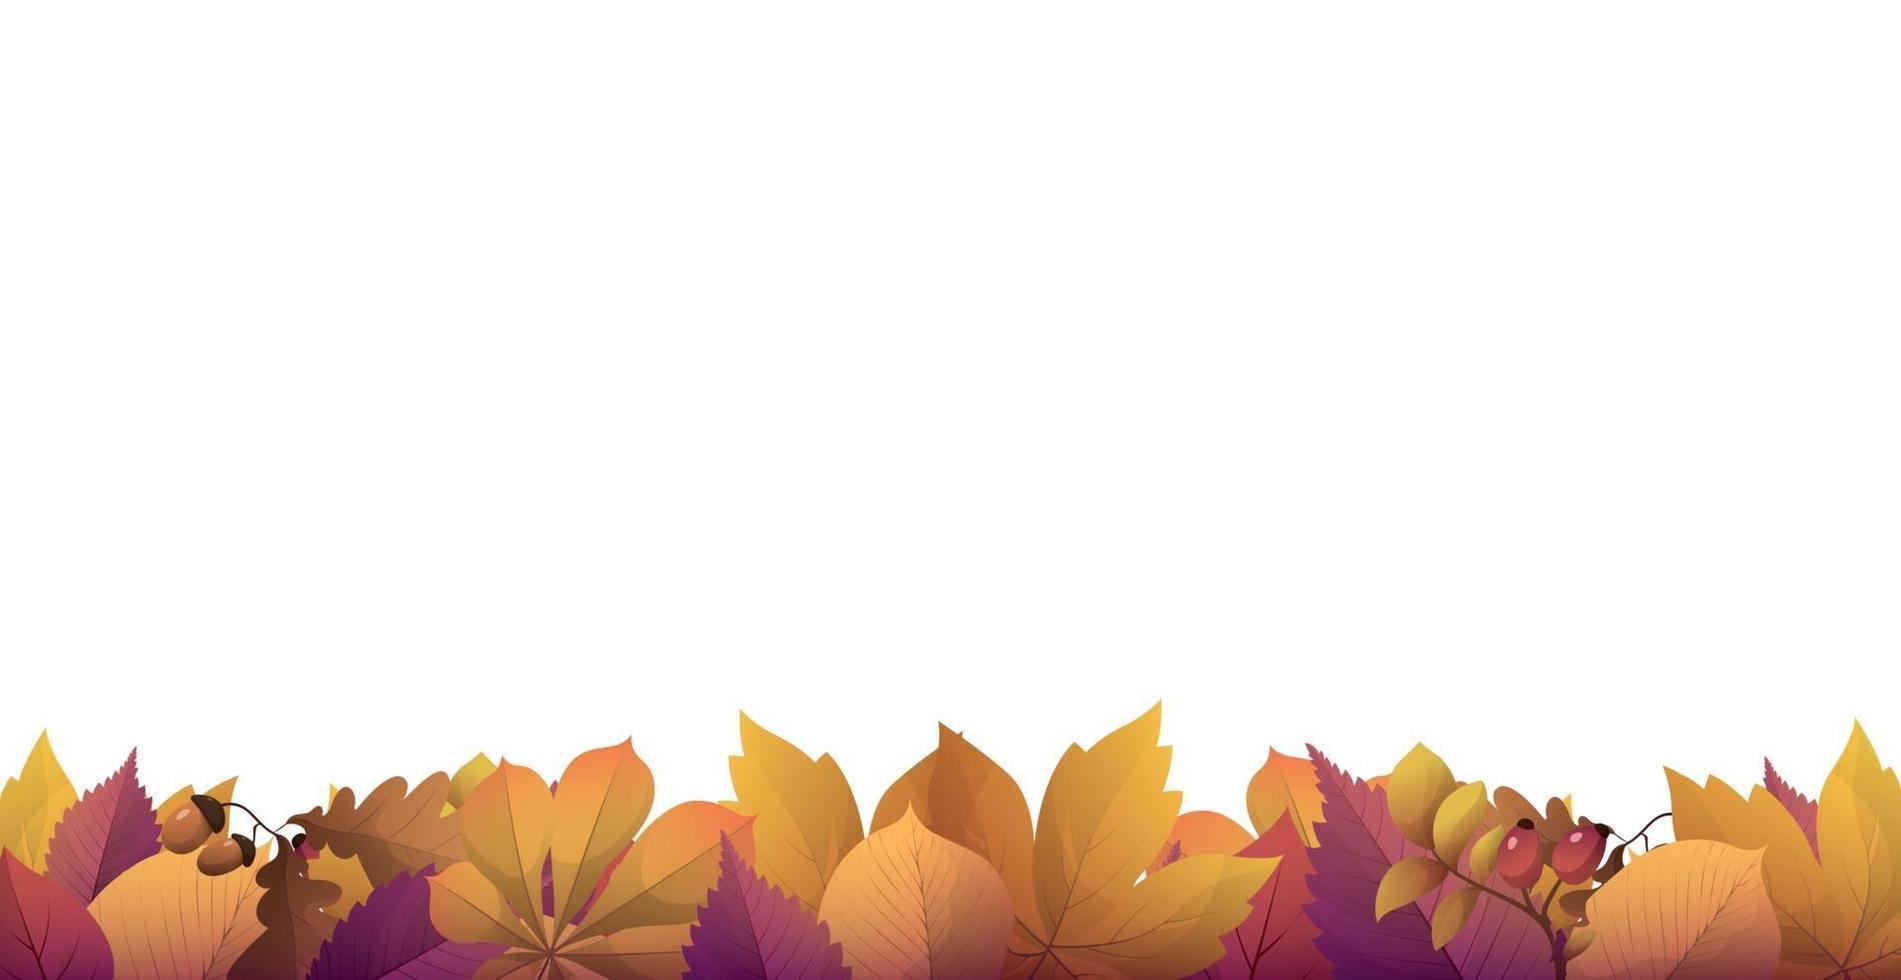 realistisches Herbstlaub, weißer Hintergrund mit Platz für Text vektor